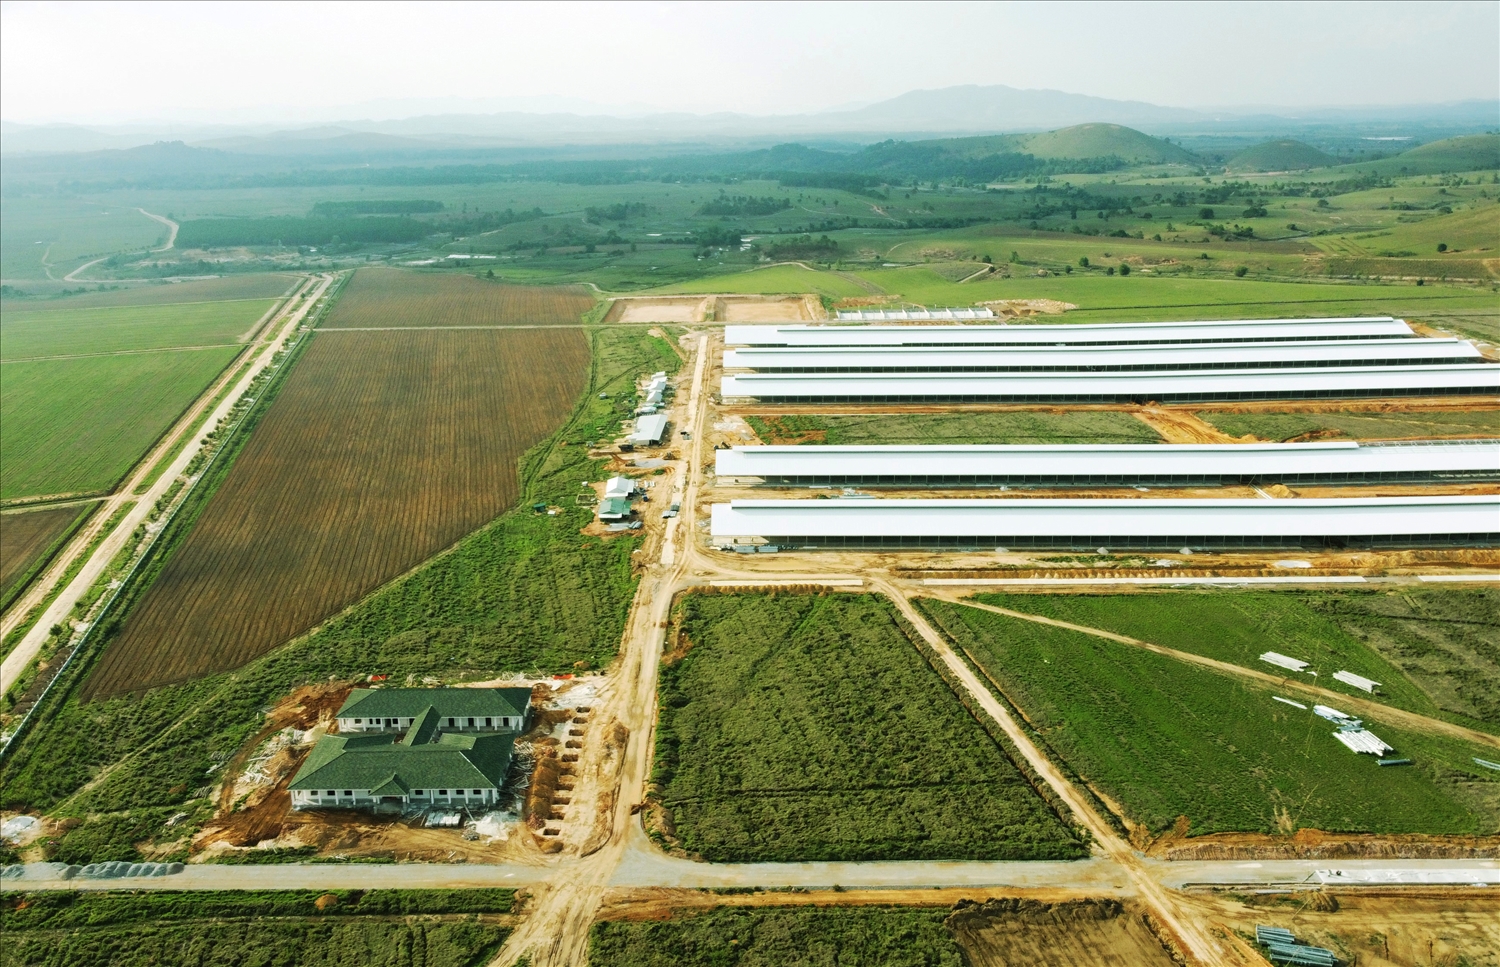 Trang trại đầu tiên trong Tổ hợp bò sữa Lao-Jagro tại Xiêng Khoảng của Vinamilk đã hoàn thành các hạng mục xây dựng cơ bản (ảnh chụp tháng 5/2021)